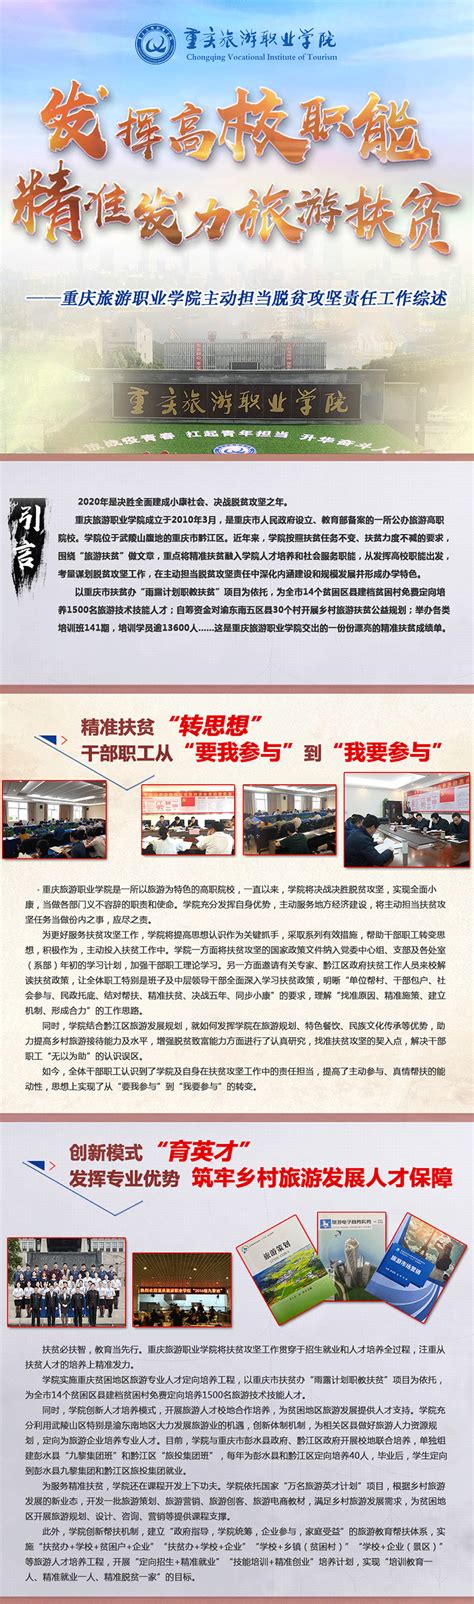 重庆旅游学校建胜分校2021报名条件、招生要求_职校资讯_力本学习网